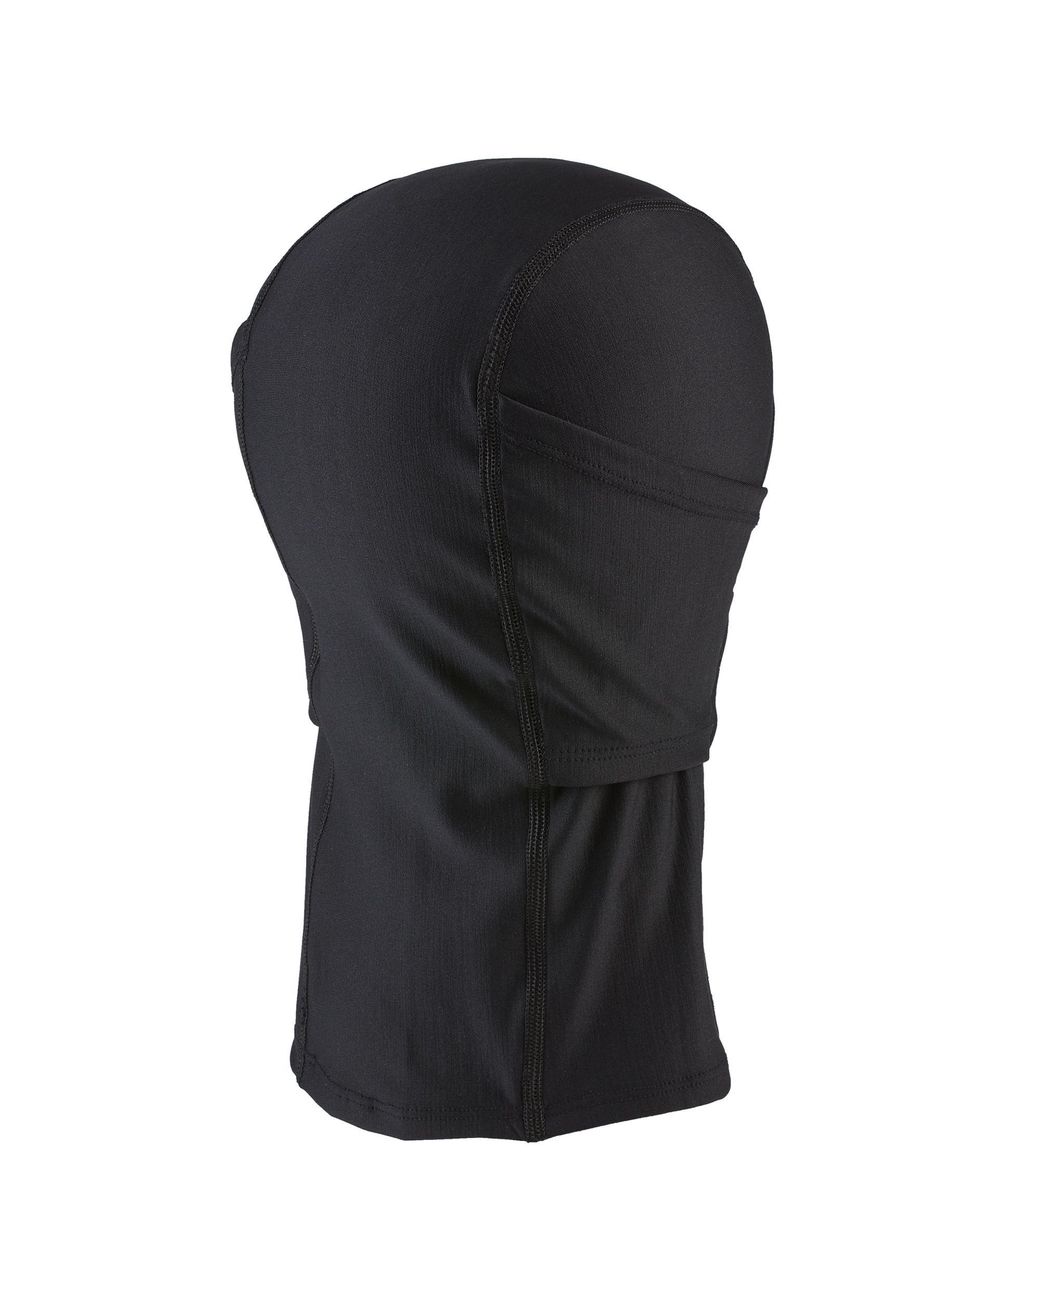 Nike Synthetic Pro Hyperwarm Hood in Black,White (Black) for Men | Lyst